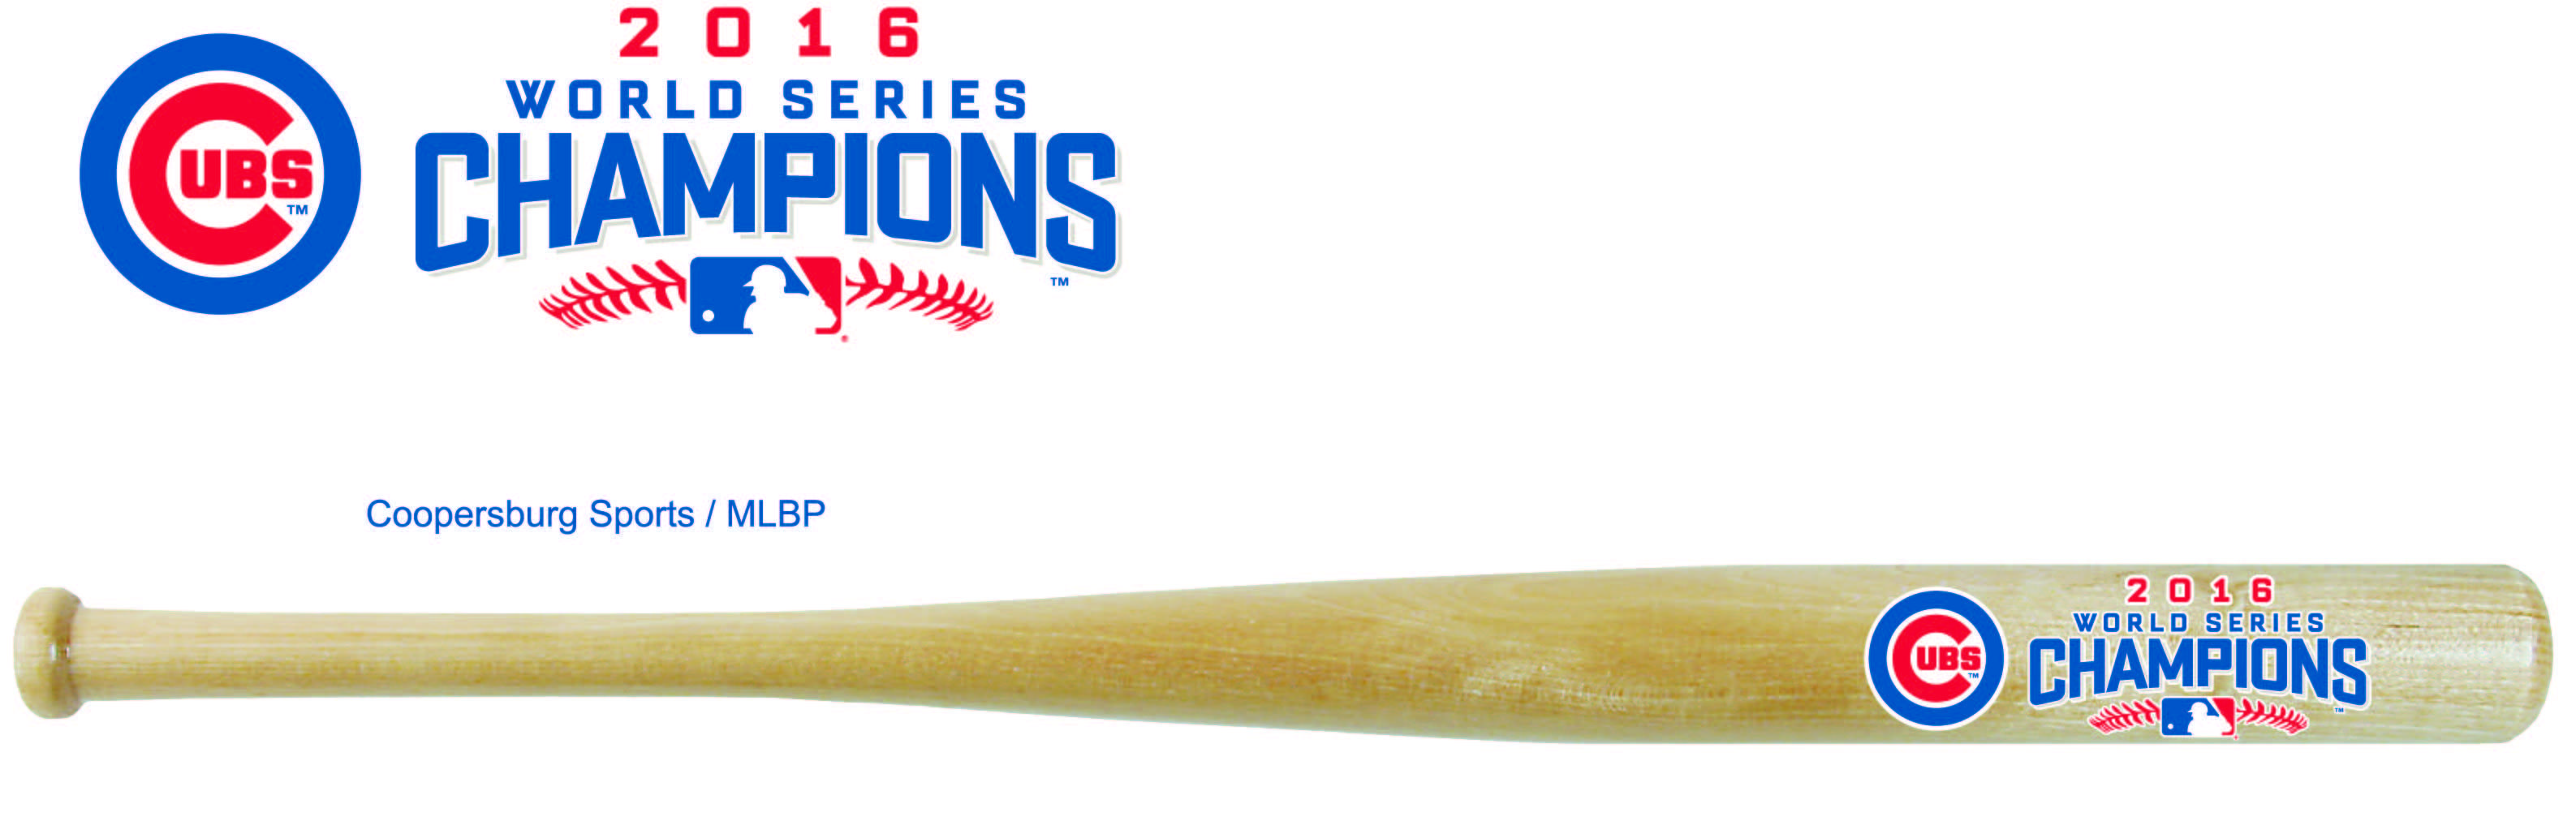 Baseball Bat Team Logo - Chicago Cubs World Series 2016 Champions MLB Natural Wood Baseball ...